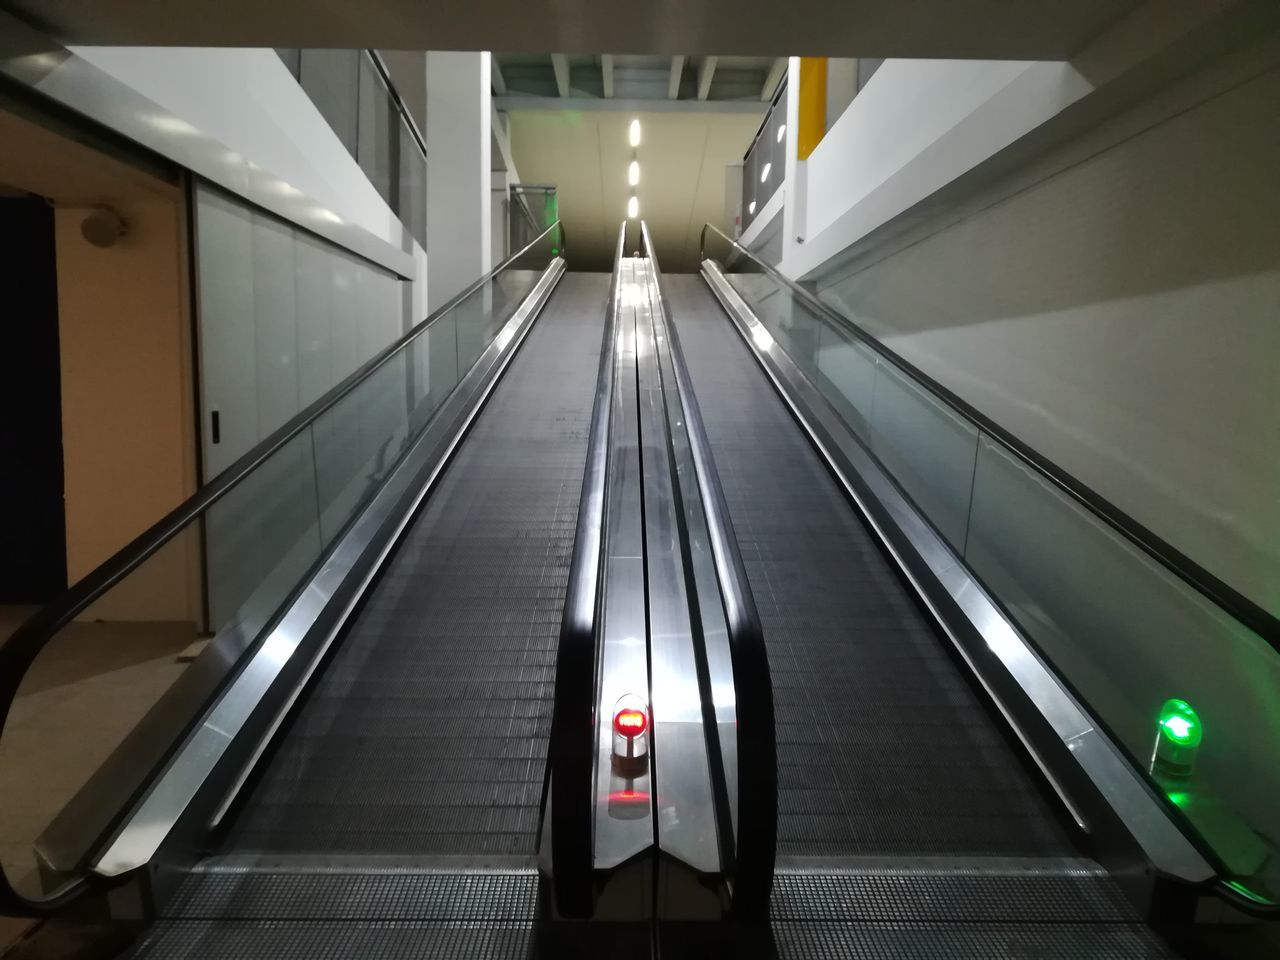 Empty escalators